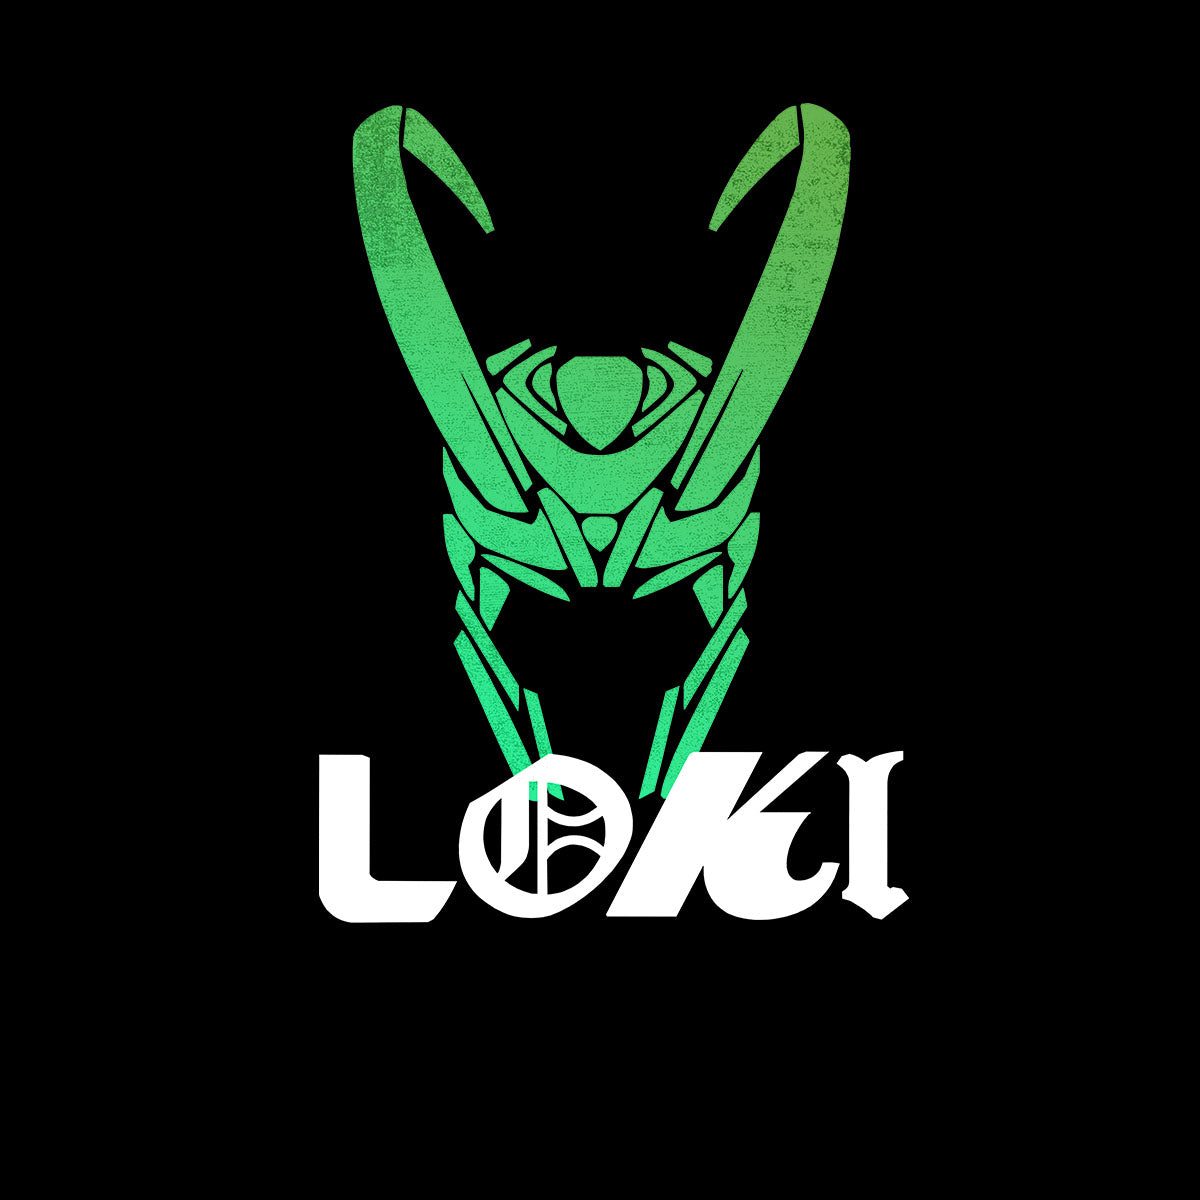 Loki Helmet Marvel Superhero Comic Star Tom Hiddleston T-shirt for Kids - Kuzi Tees